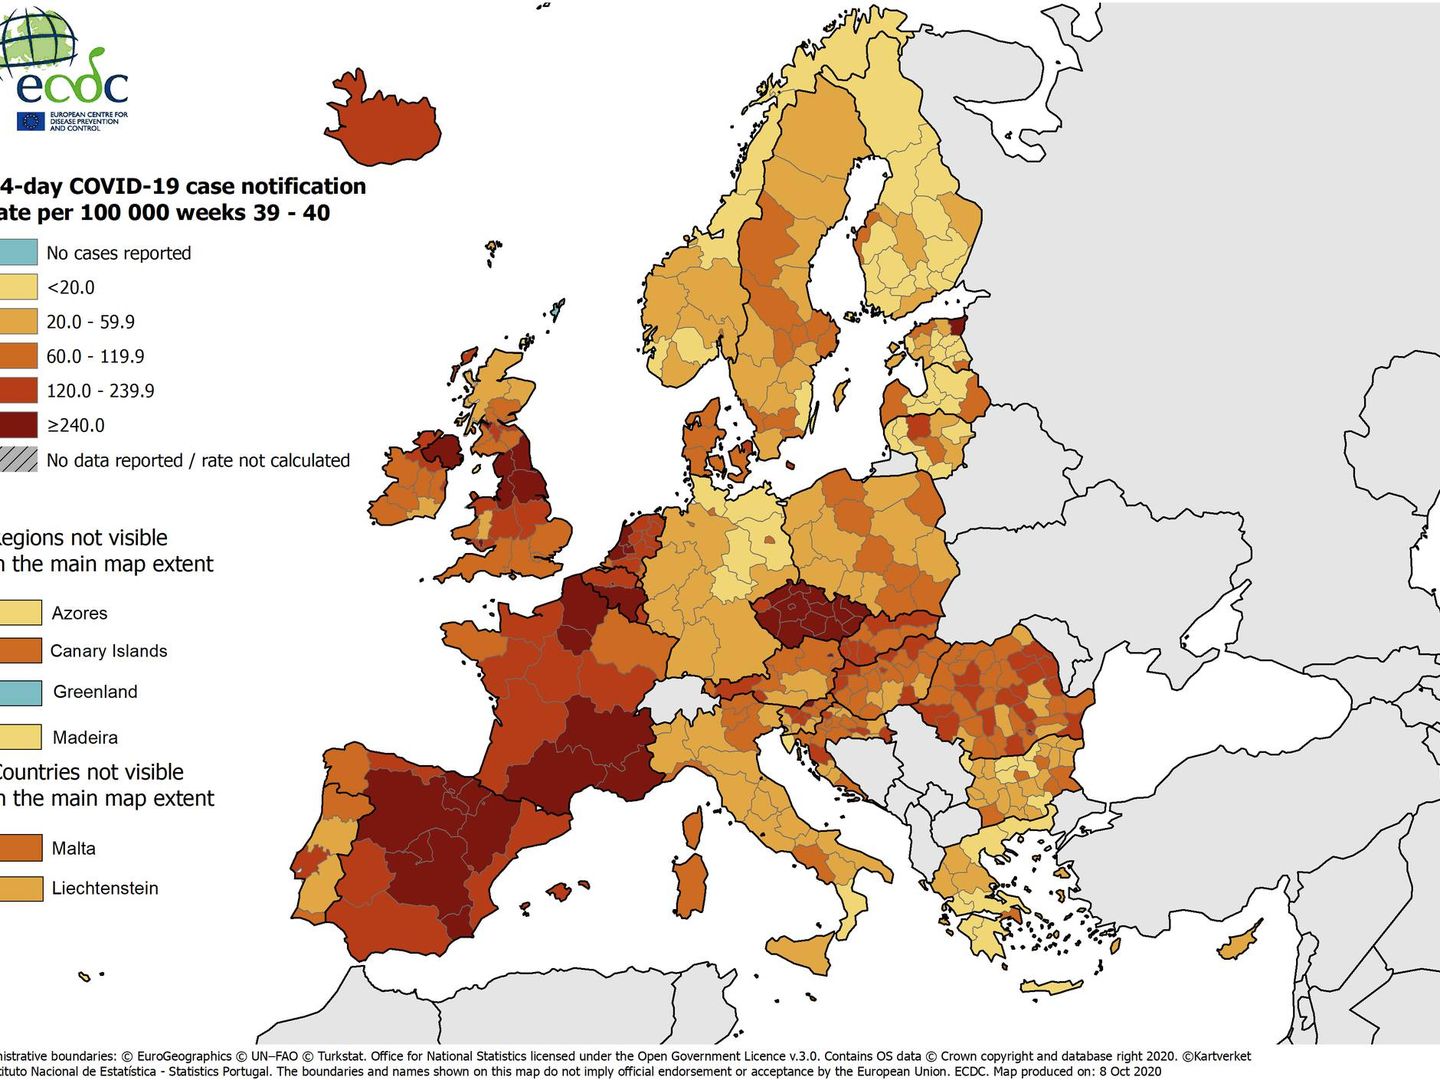 Mapa con la incidencia acumulada de contagios por regiones de Europa. (ECDC)